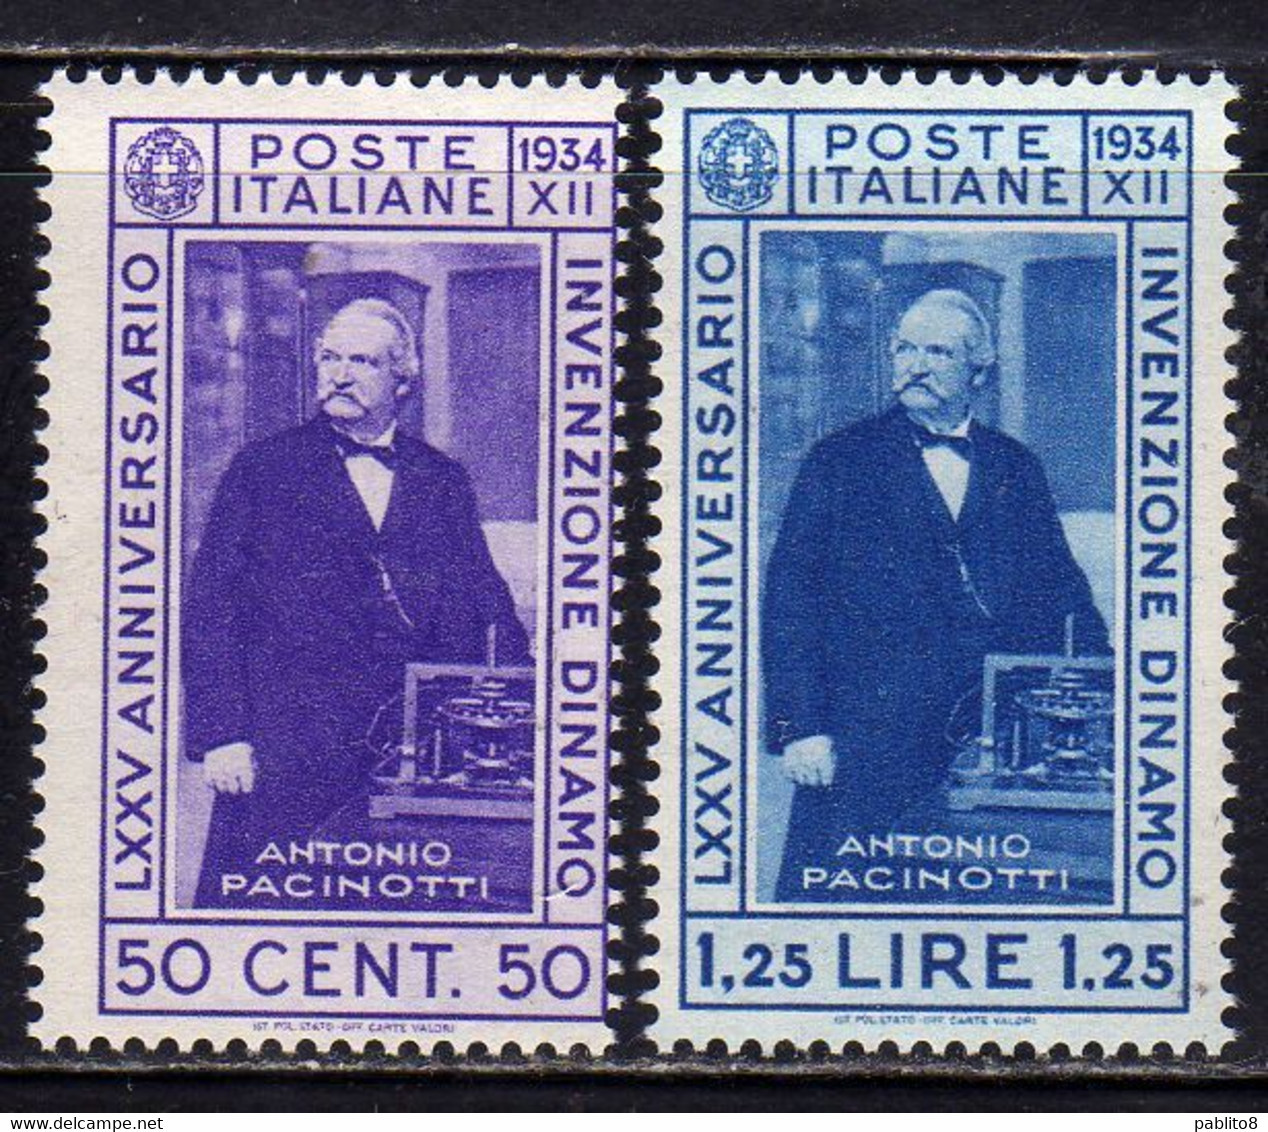 ITALIA REGNO ITALY KINGDOM 1934 INVENZIONE DELLA DINAMO PACINOTTI SERIE COMPLETA COMPLETE SET MNH - Nuovi